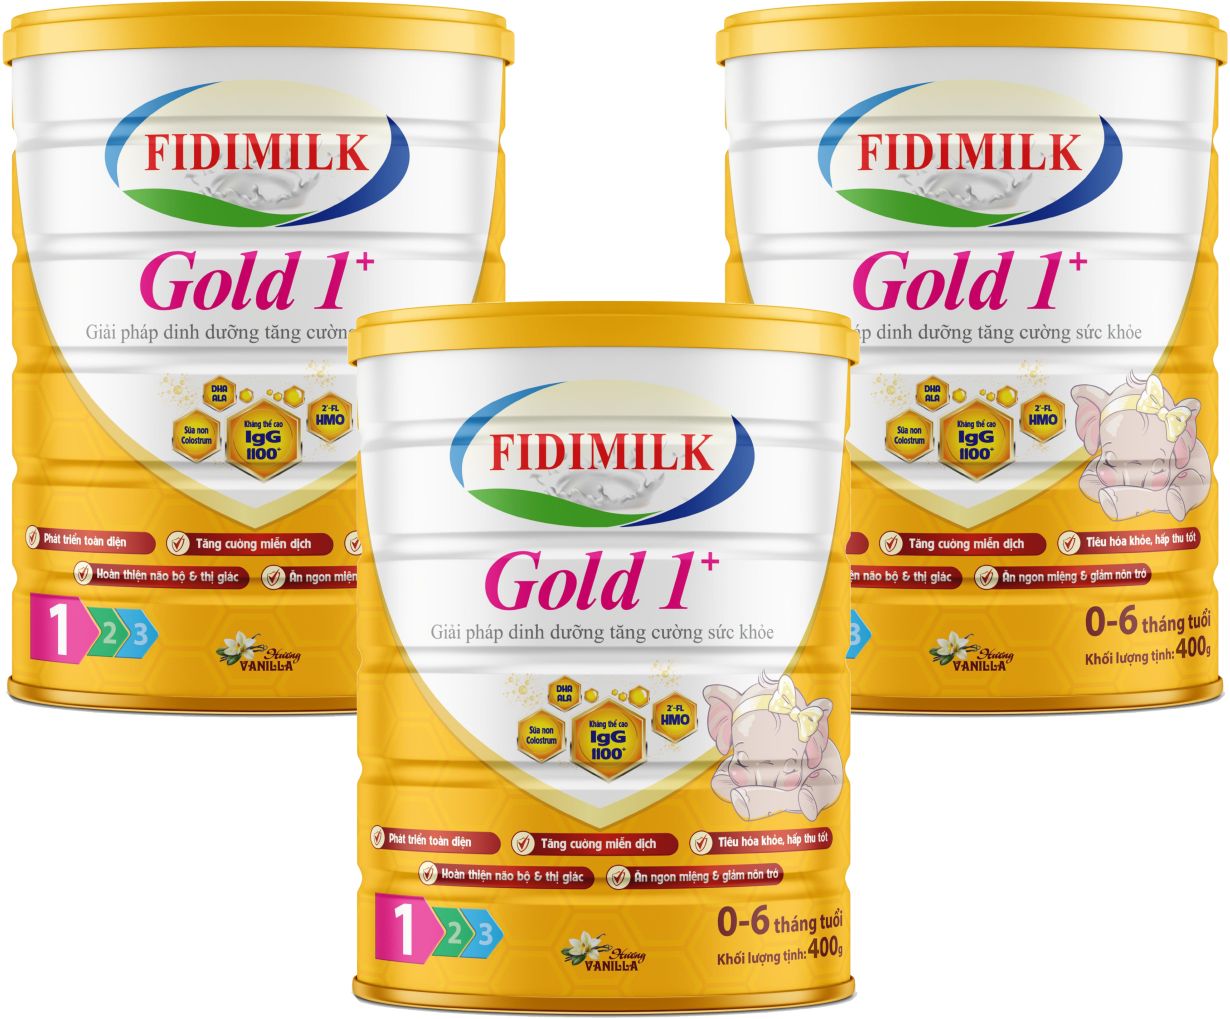 Combo 3 lon Sữa công thức FIDIMILK GOLD 1+ lon 400g - Dinh dưỡng phát triển toàn diện, Dành cho bé 0-6 tháng tuổi.